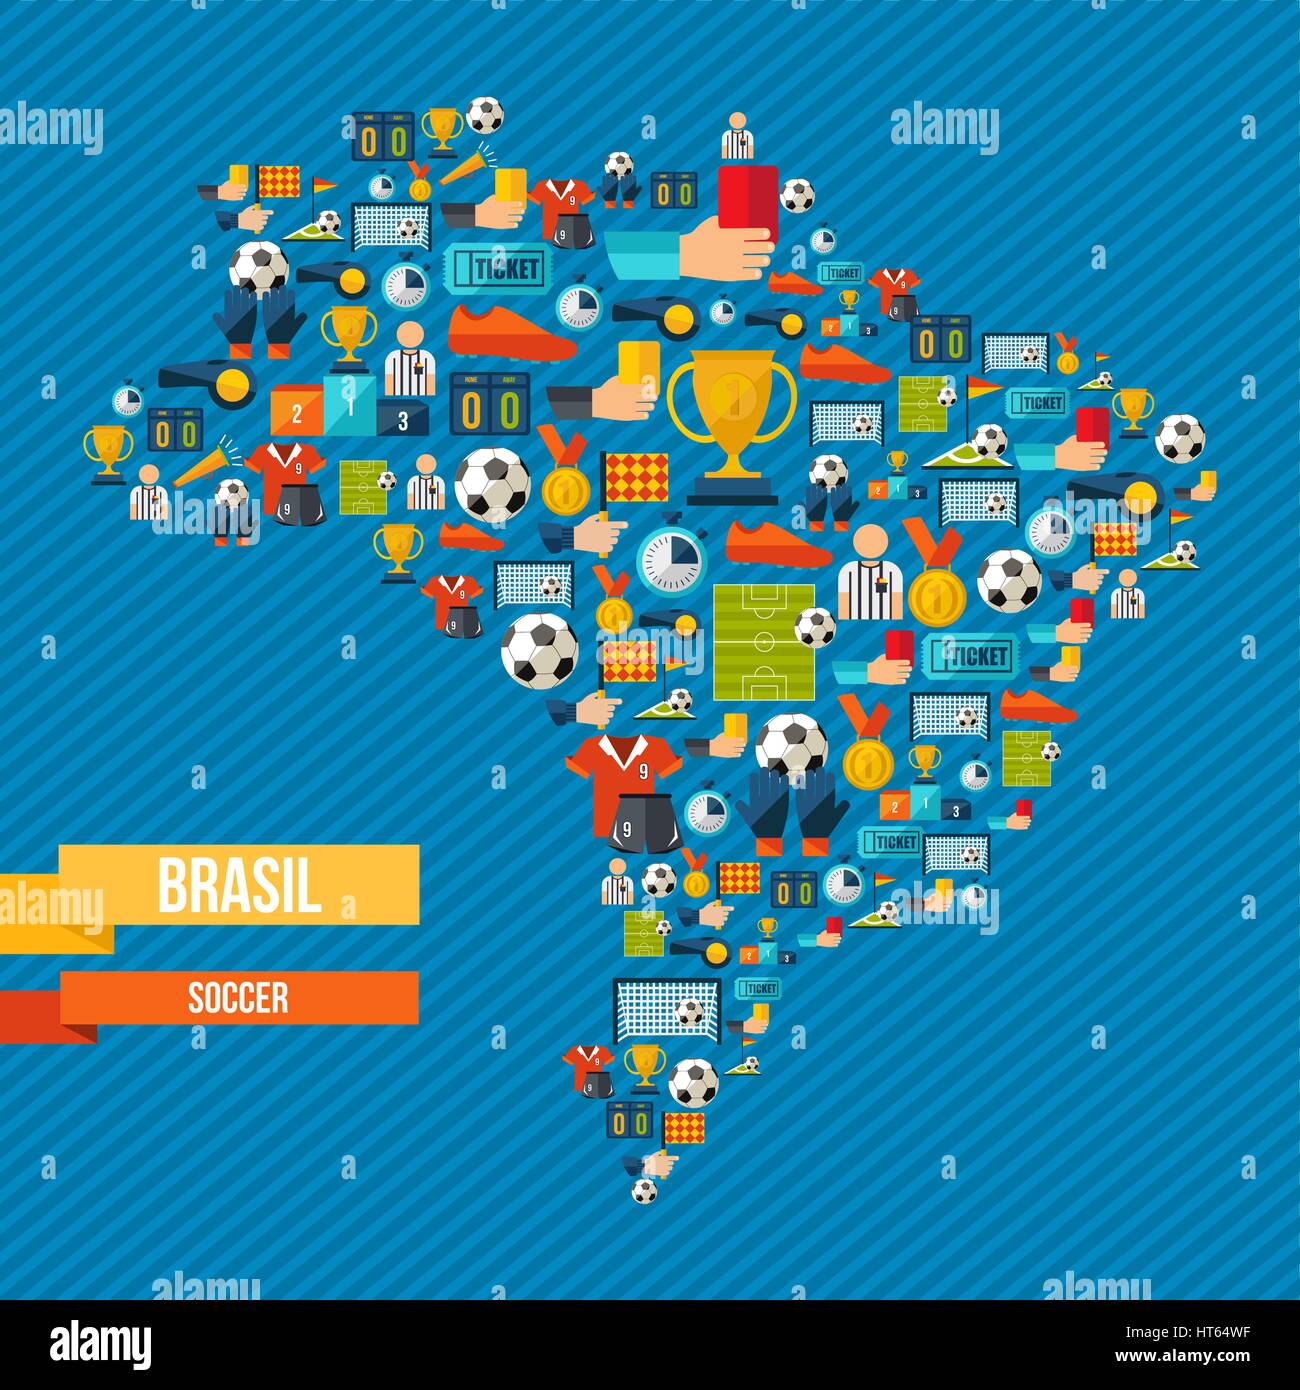 Brasilien-Fußball-Kultur-Ikonen in Landkarte. Sport-Elemente für Football-Spiel, Ball, Schuhe, Champion Cup und mehr enthält. EPS10 Vektor. Stock Vektor